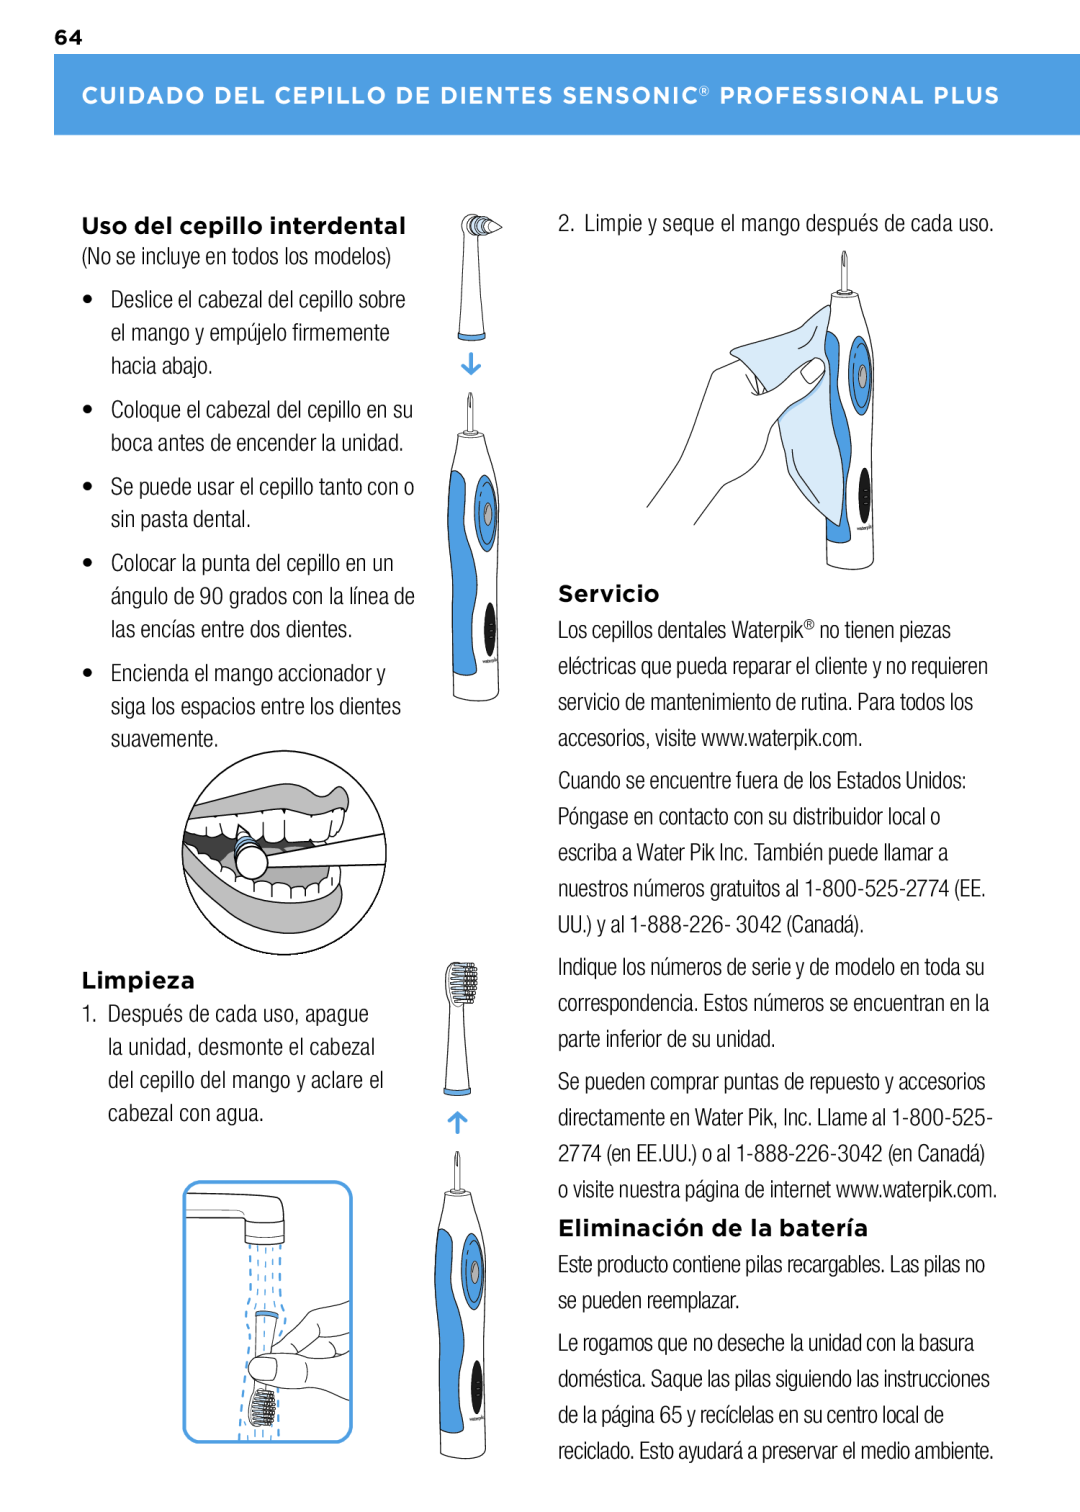 Waterpik Technologies wp-900 manual Cuidado Del Cepillo De Dientes Sensonic Professional Plus, Limpieza, Servicio 